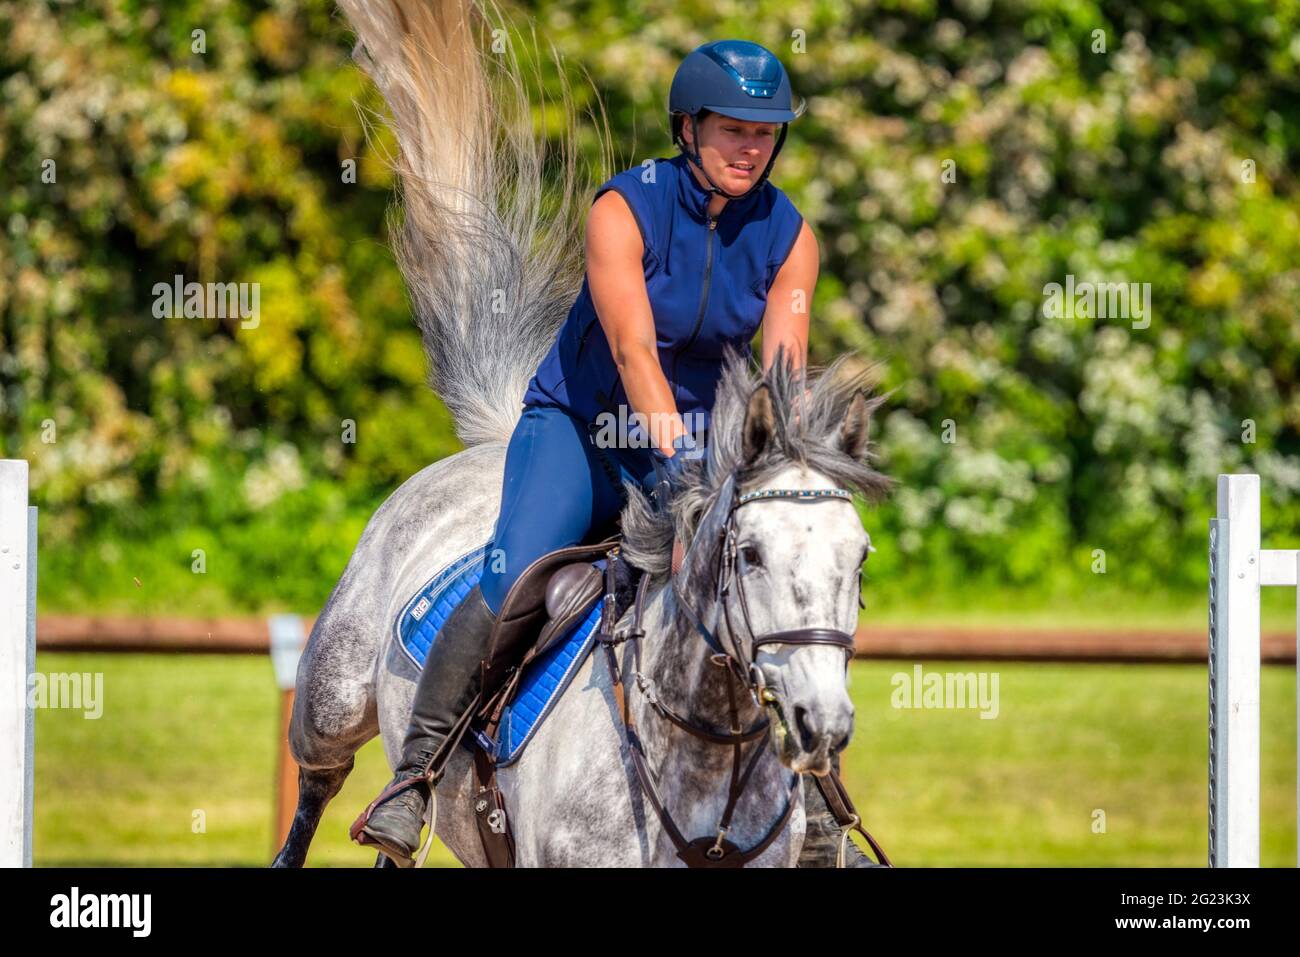 Fliegender Schwanz. Rebecca Markillie reitet Turbine Breeze während des Reittrainings im Speetley Equestrian Center, Barlborough, Chesterfield, Großbritannien Stockfoto